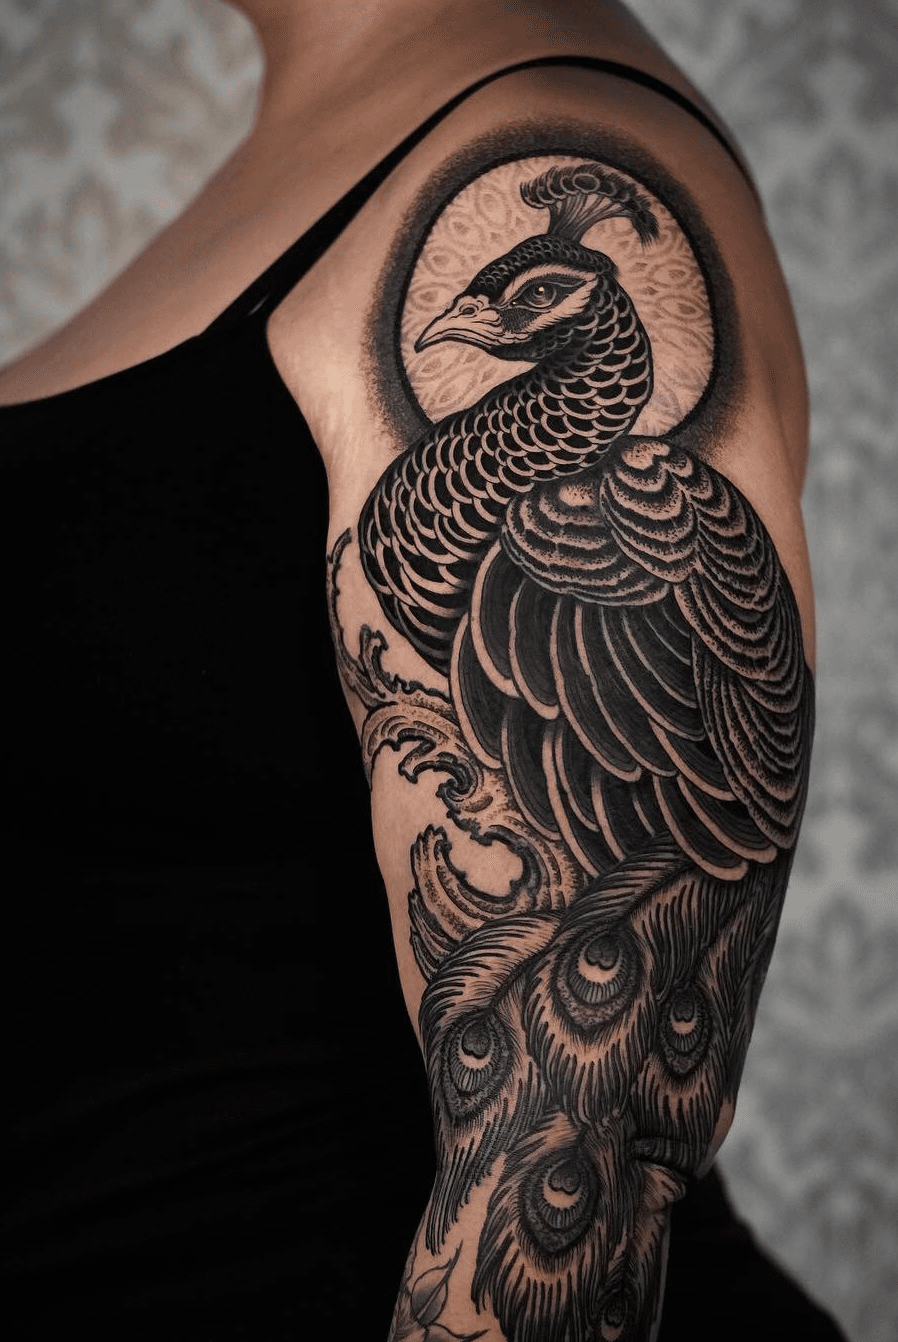 Peacock and Geisha Mermaid Tattoo Sleeve  Best Tattoo Ideas Gallery